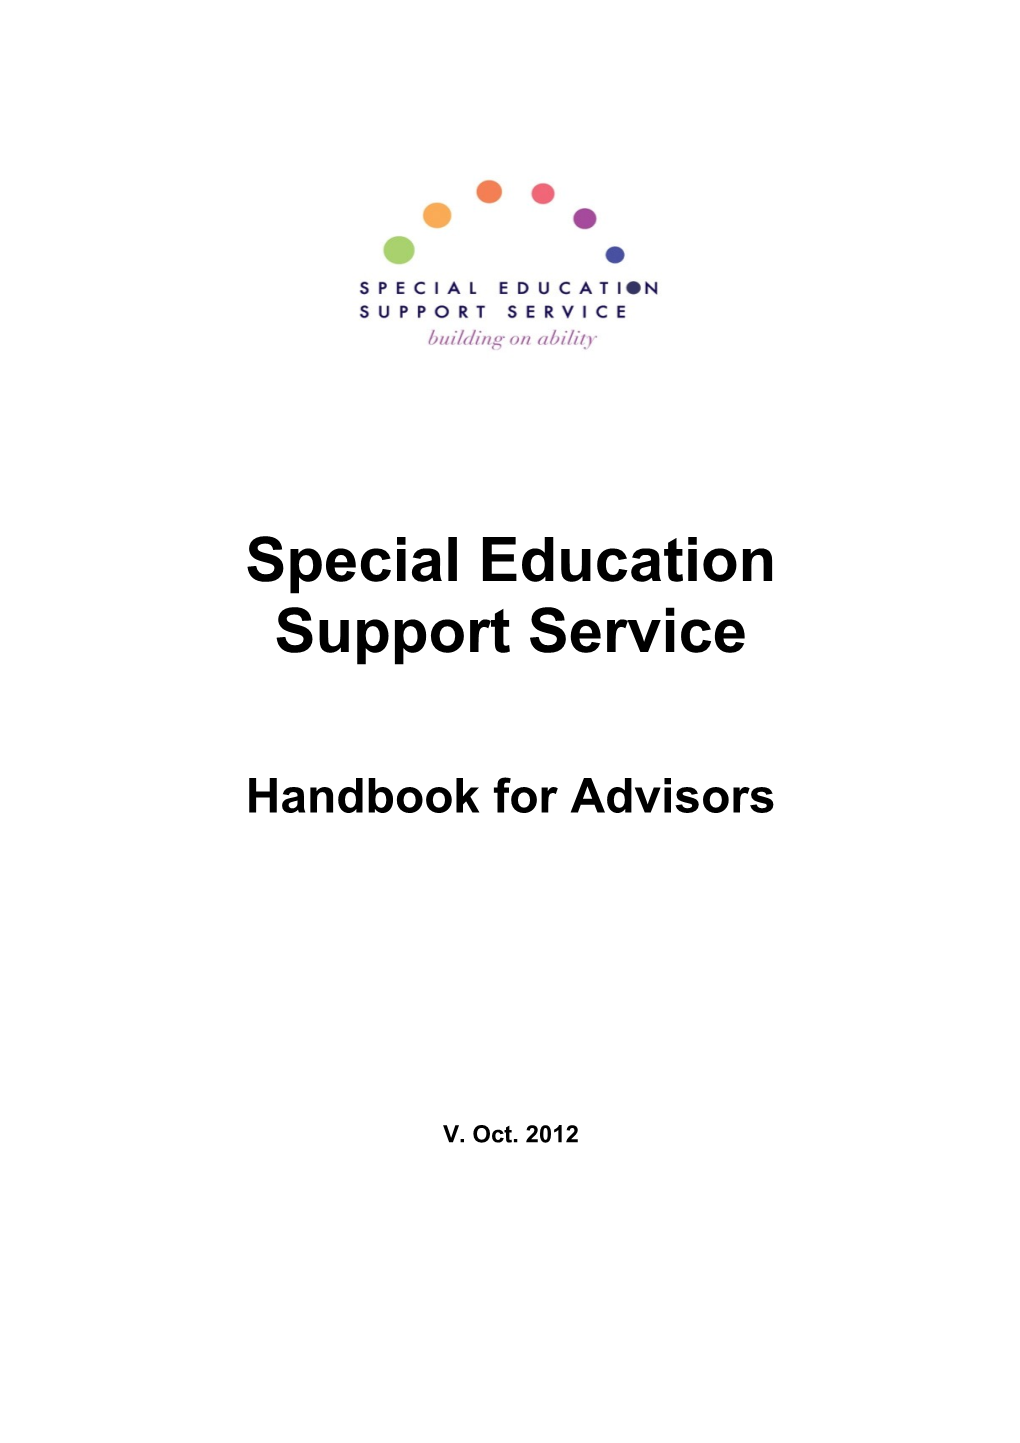 Handbook for Associates and Local Facilitators (2011)